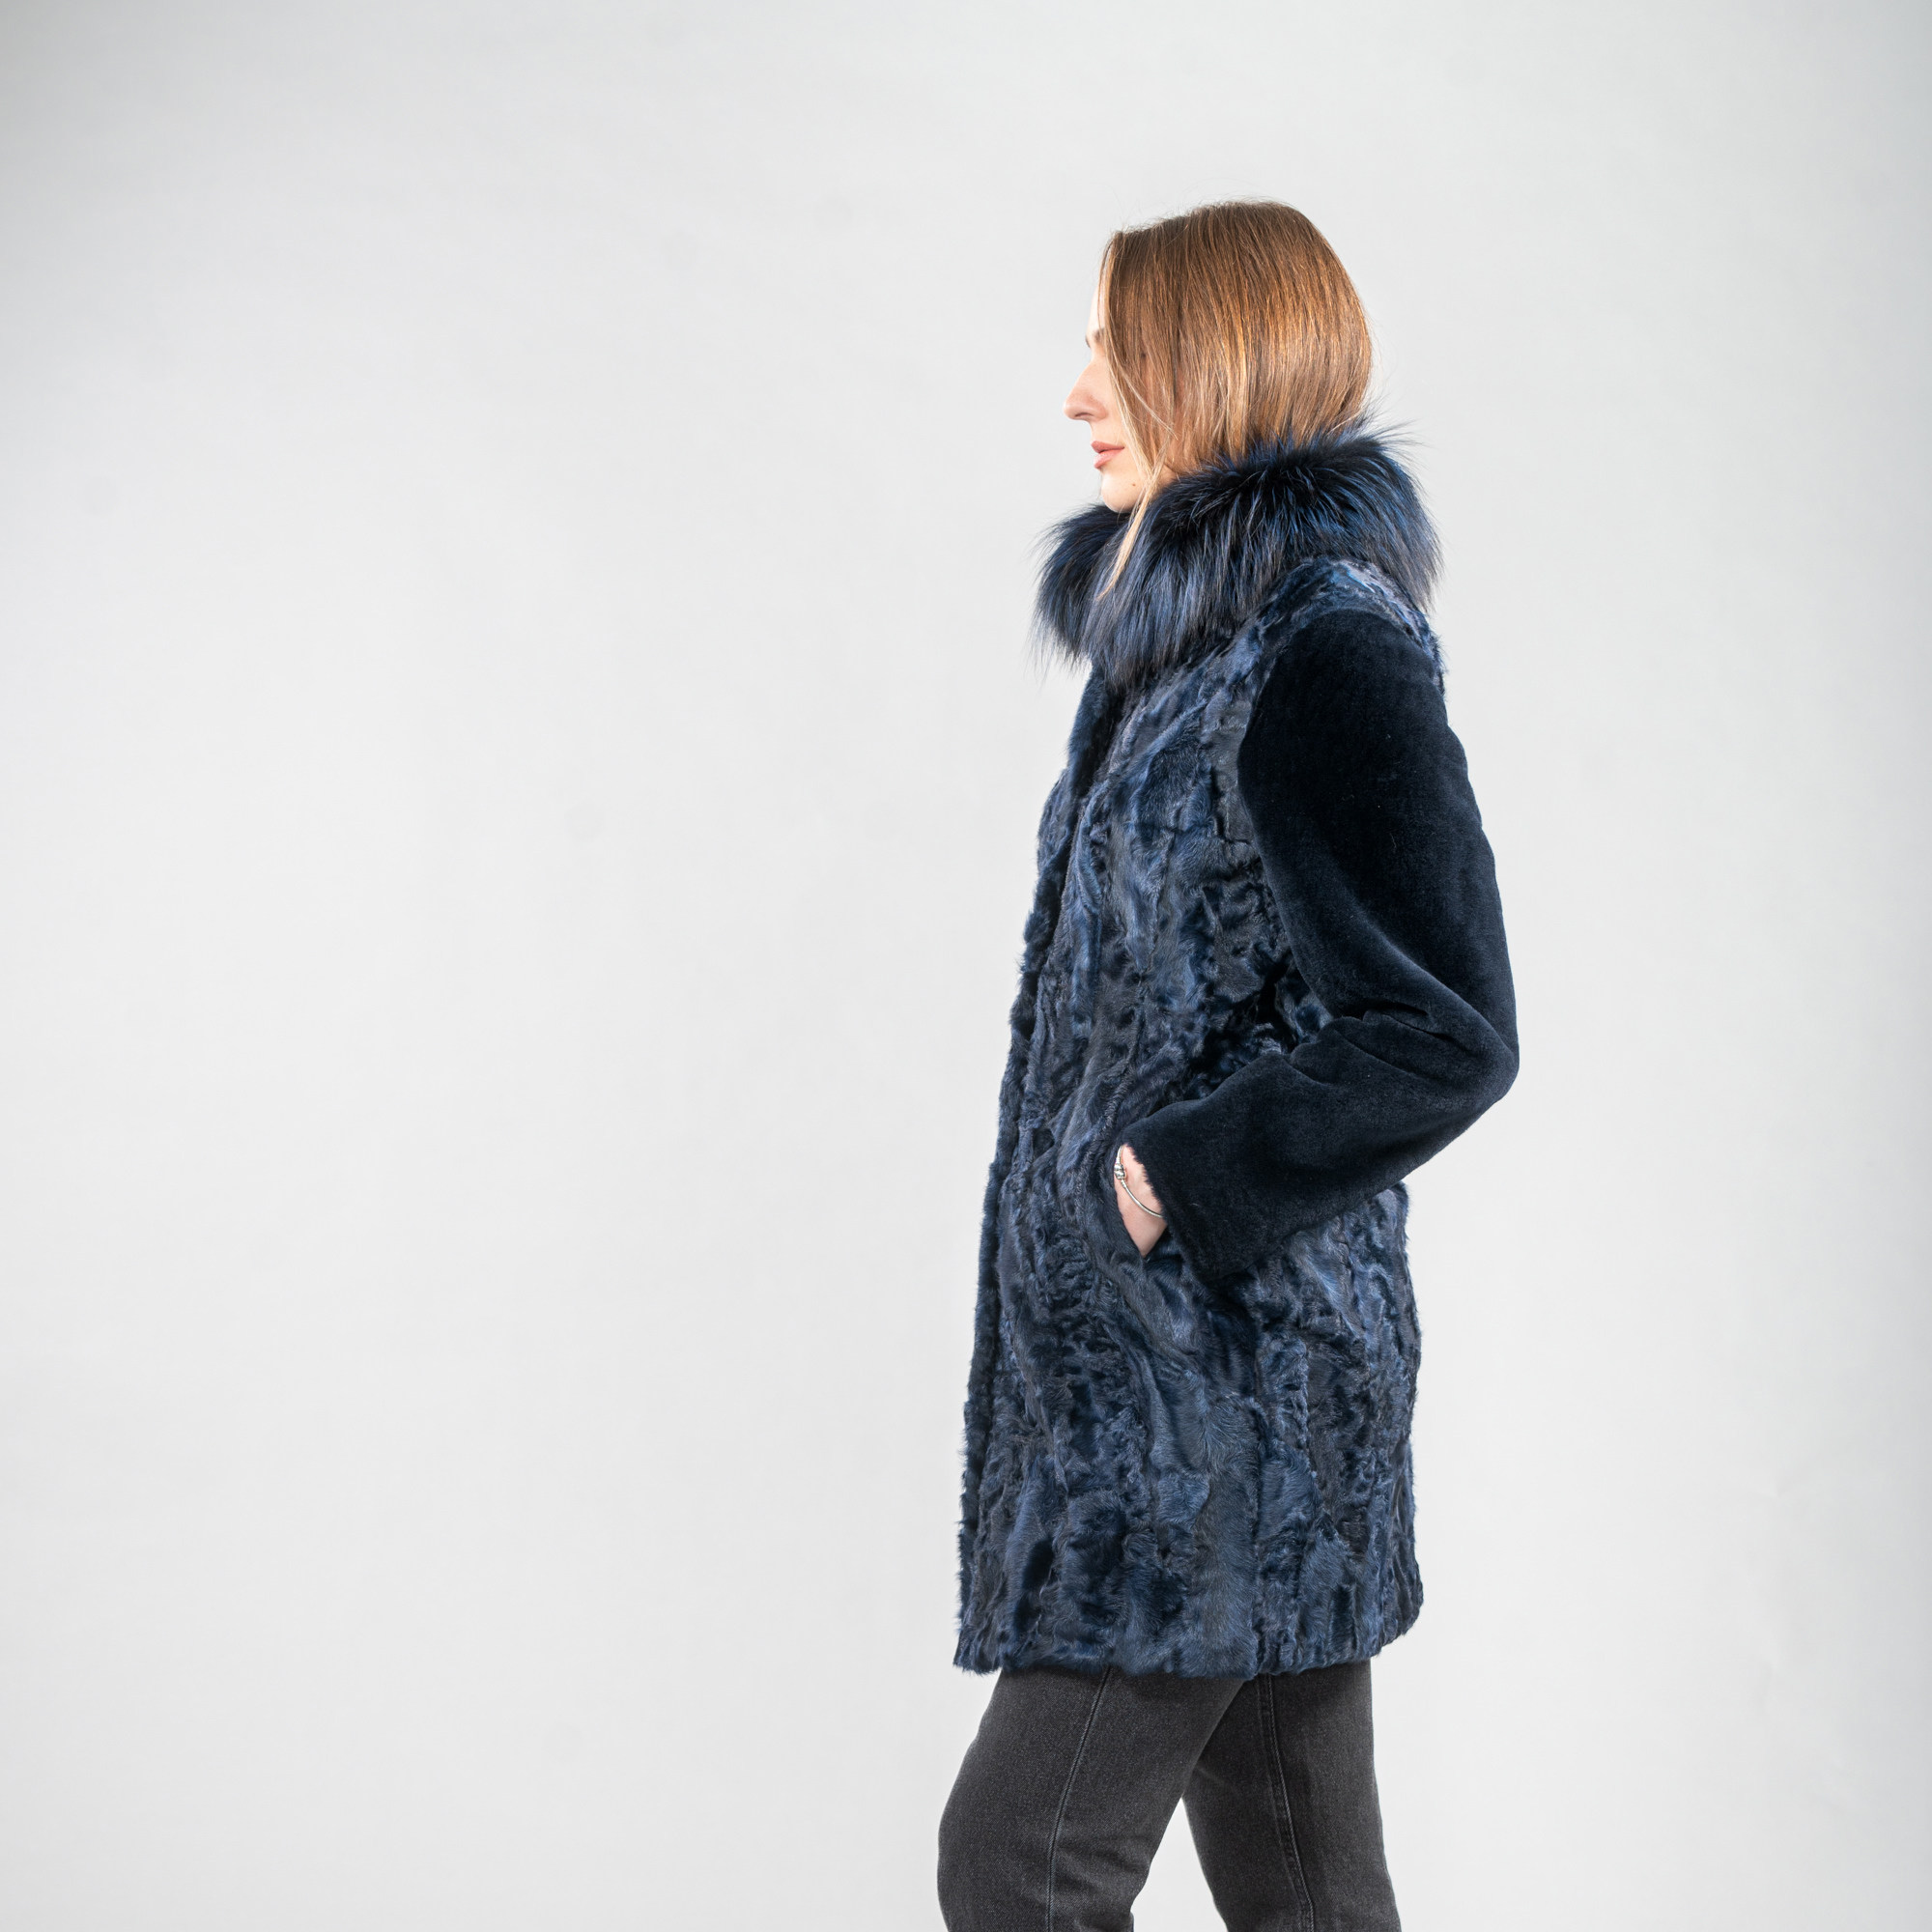 Blue Astrakhan fur coat with fur details